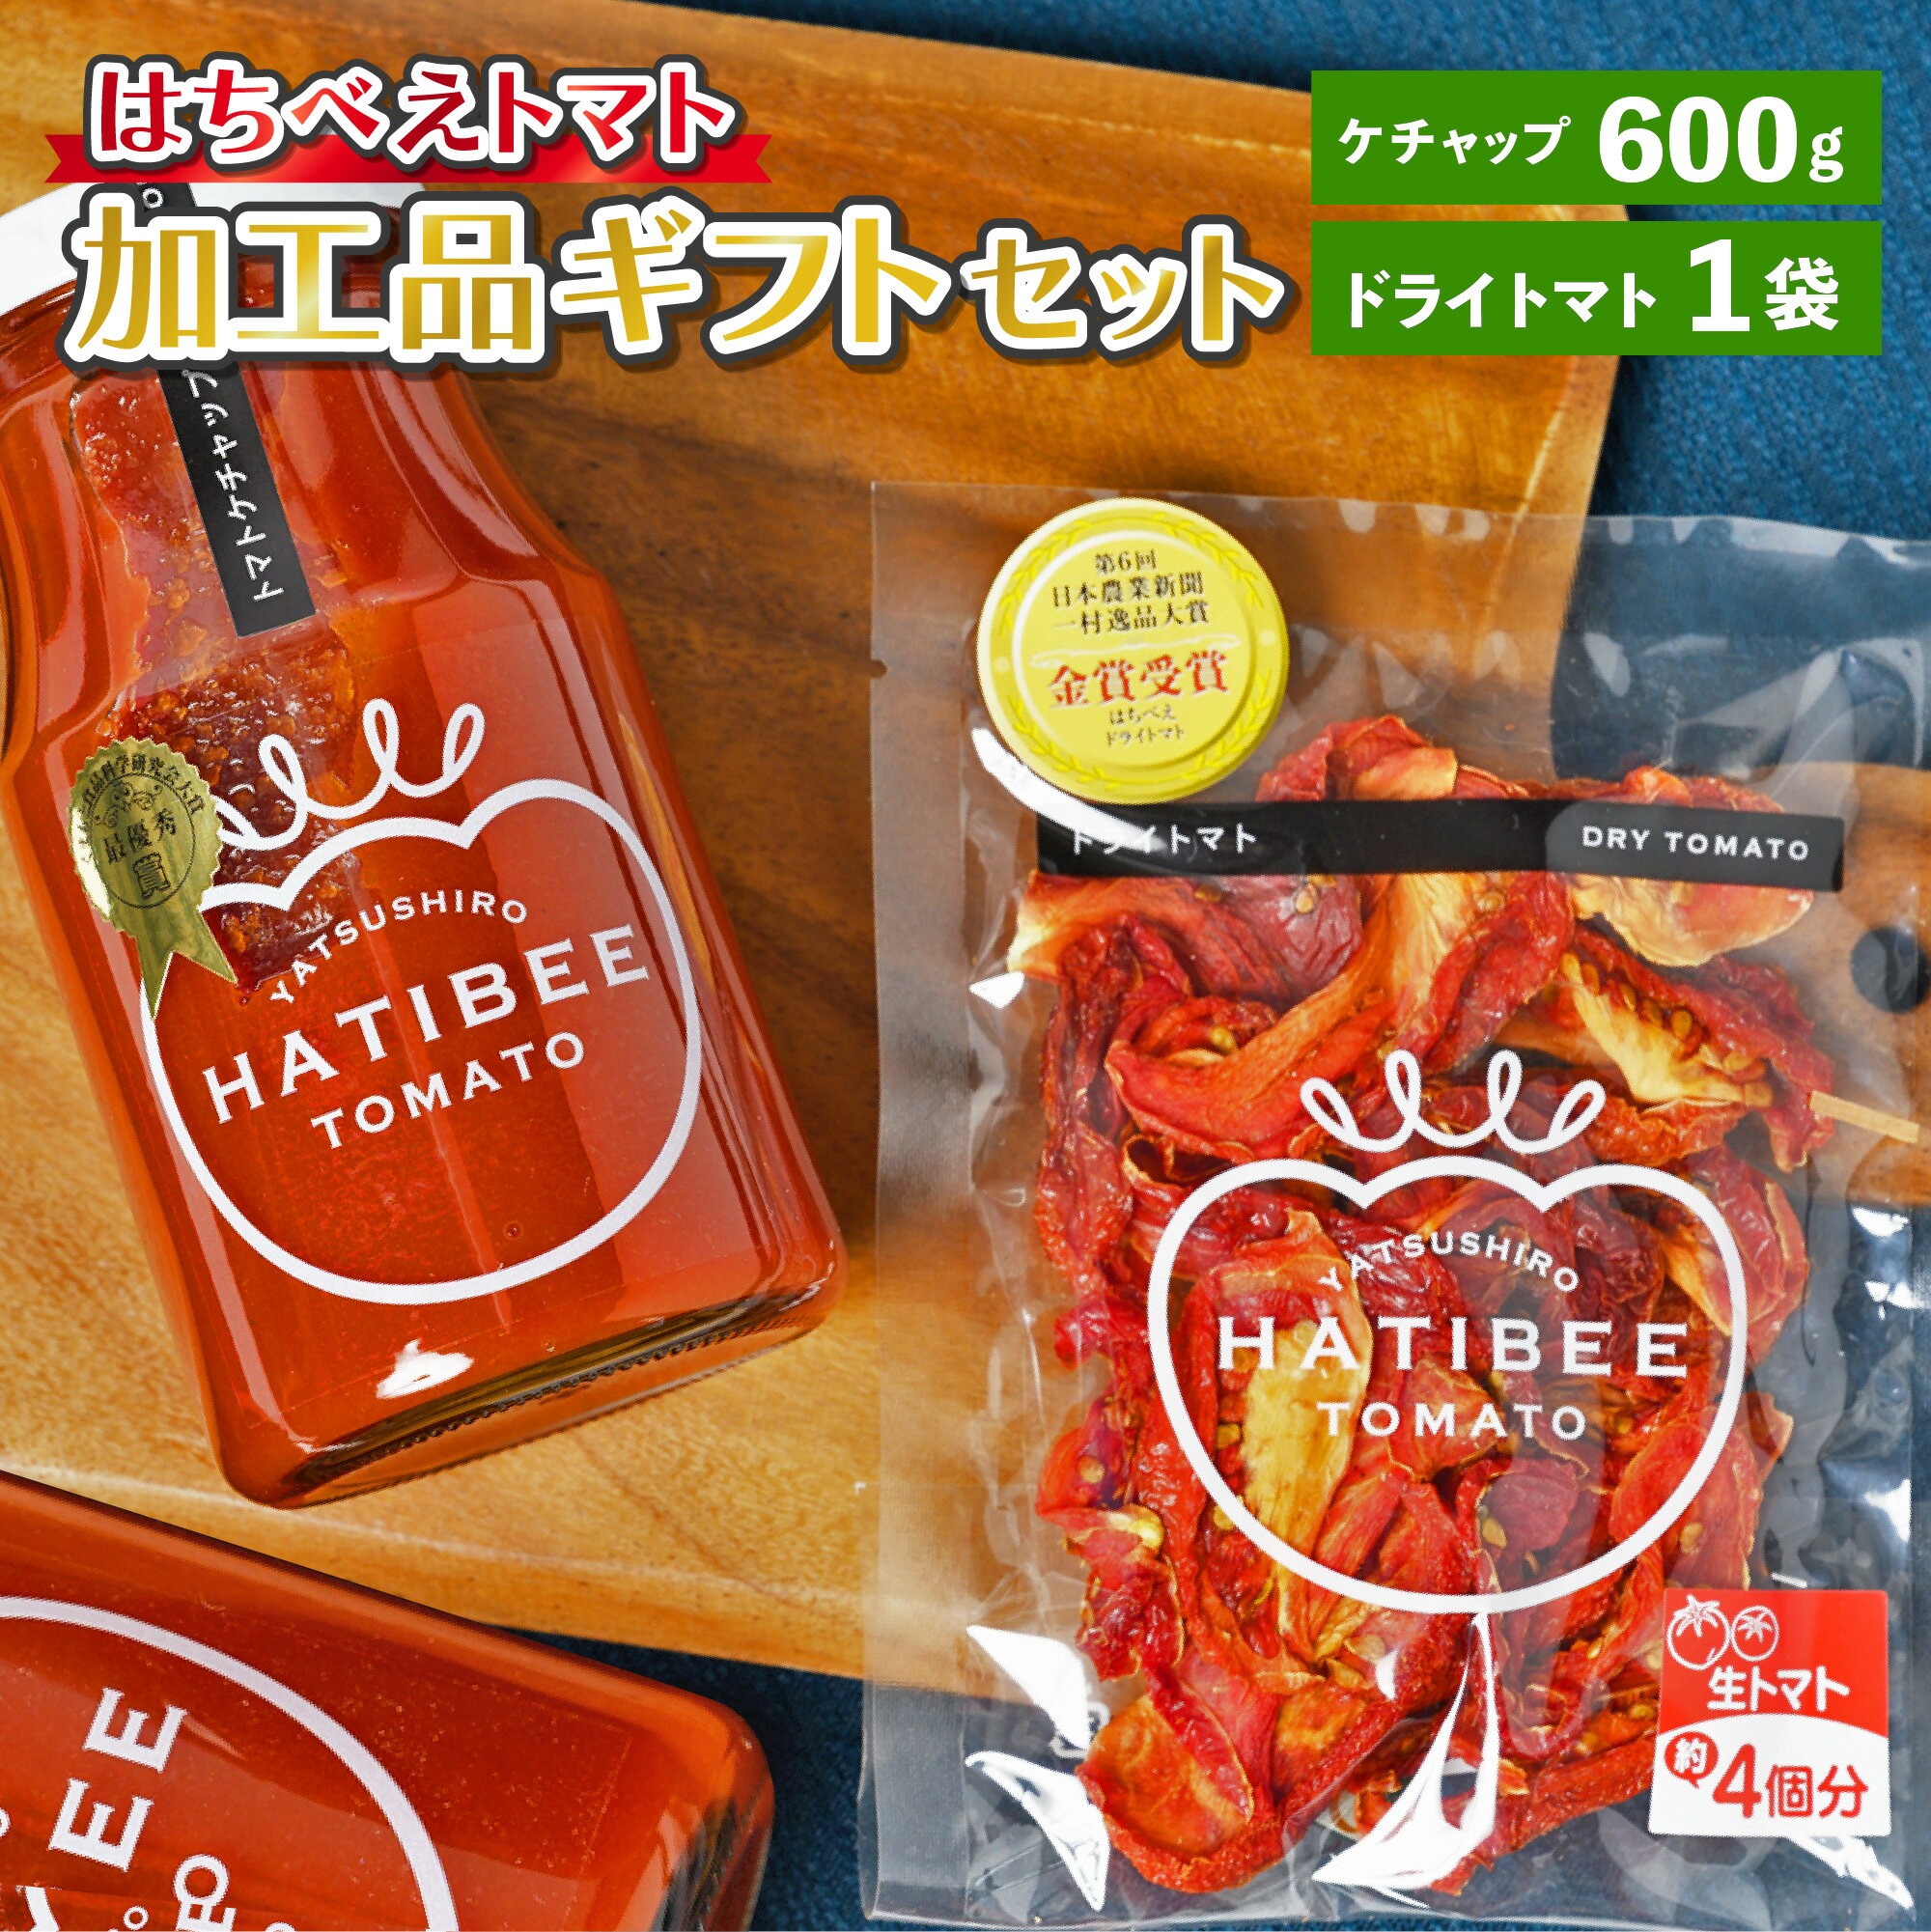 はちべえトマト 加工品ギフトセット トマトケチャップ (300g×2本) ドライトマト (1袋) 2種類 ケチャップ ソース 調味 乾燥トマト とまと トマト 加工品 詰め合わせ セット 熊本県 八代市 九州 国産 送料無料